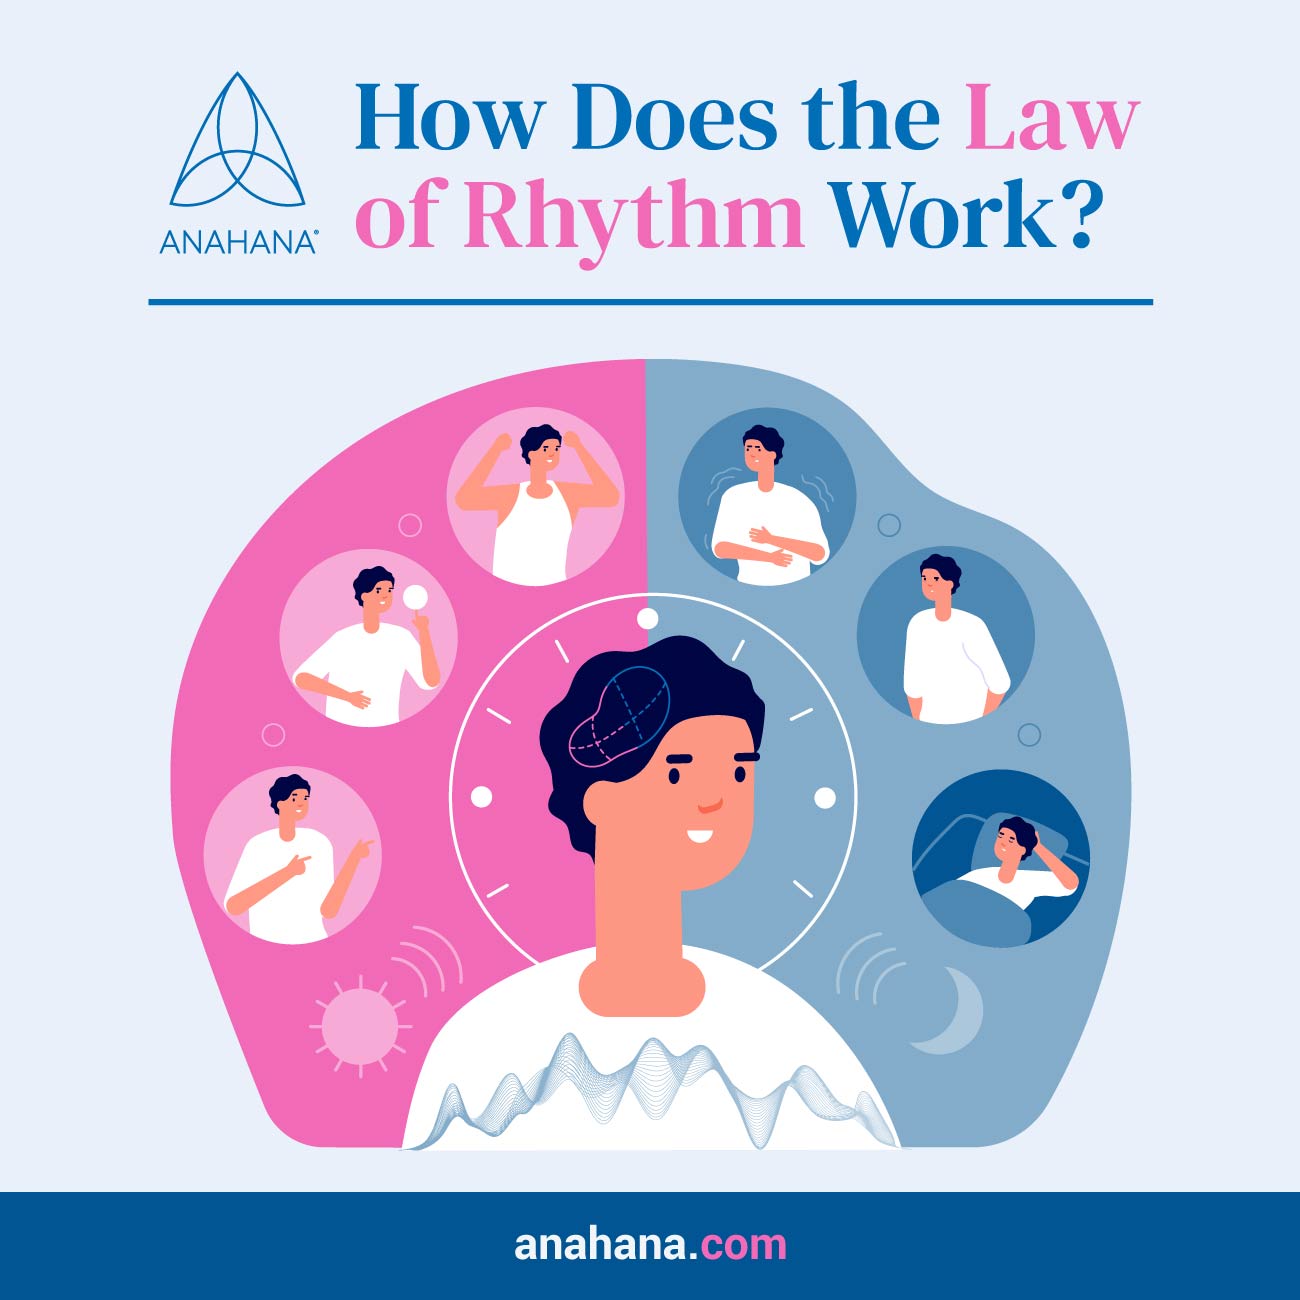 hur fungerar lagen om rytm